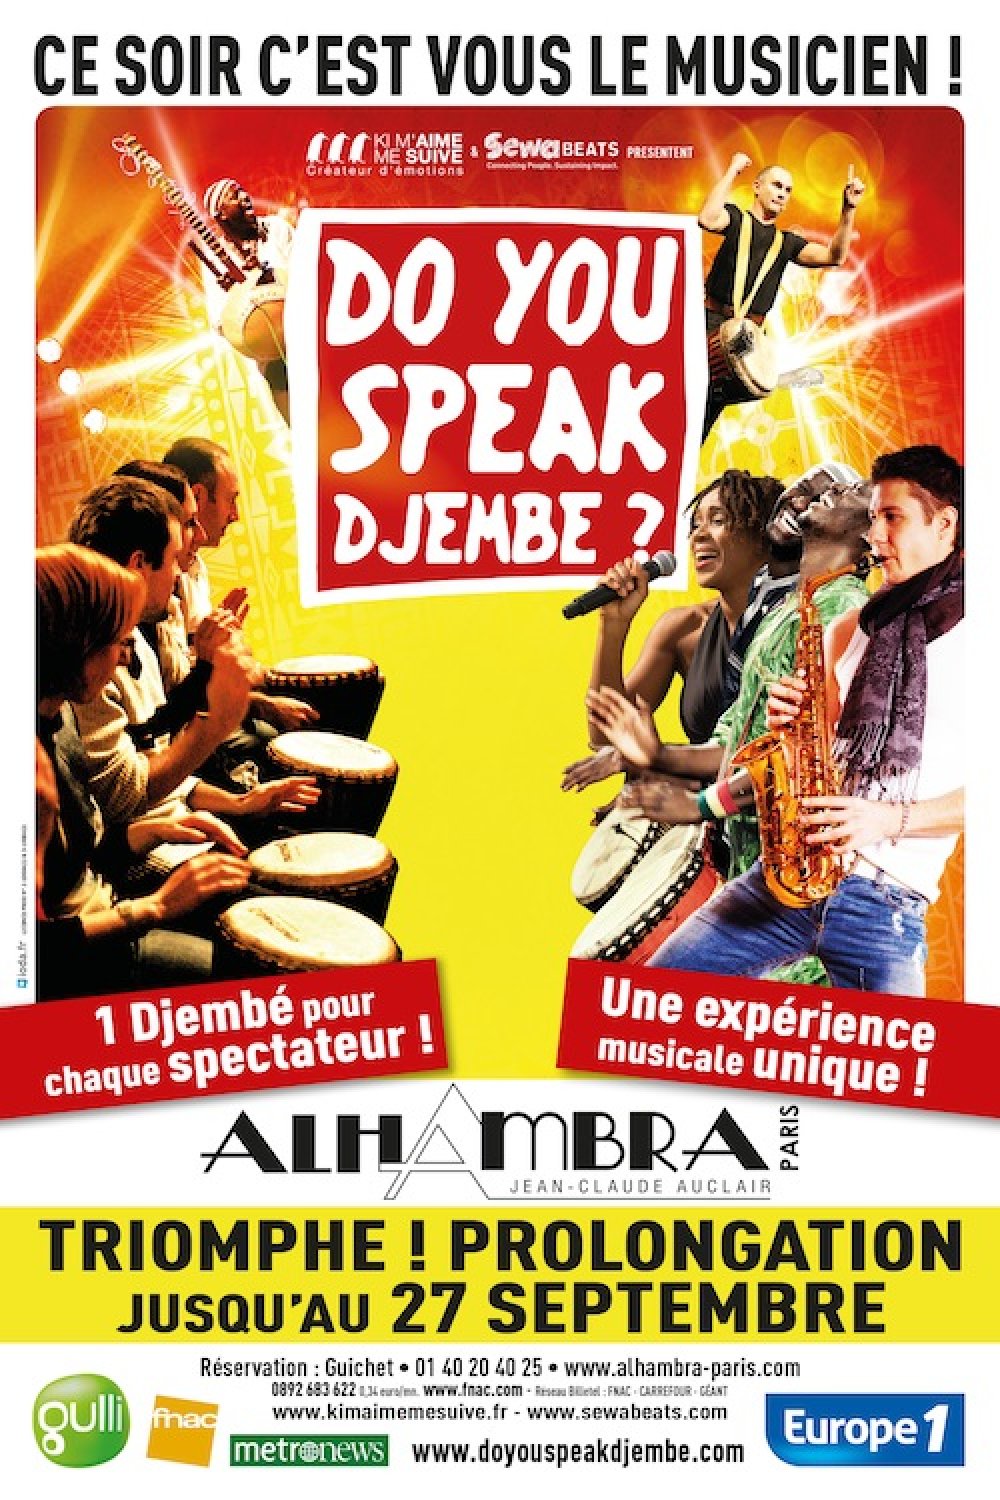 Do you speak djembé ?